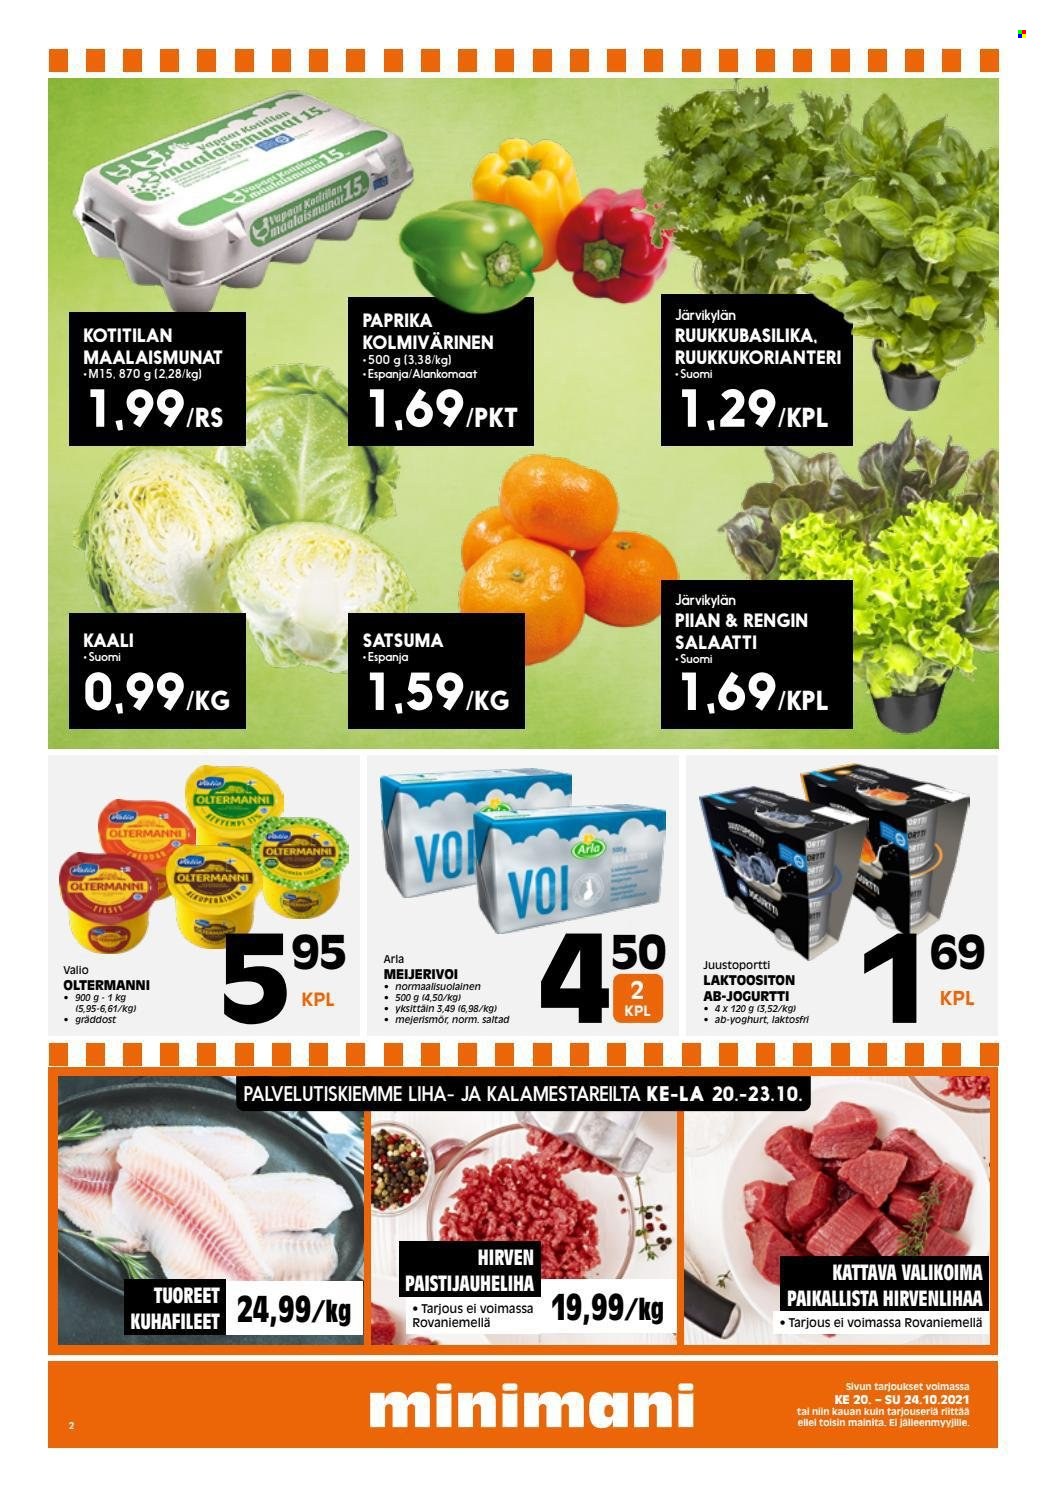 thumbnail - Minimani tarjoukset  - 20.10.2021 - 24.10.2021 - Tarjoustuotteet - paprika, Arla, jogurtit. Sivu 2.